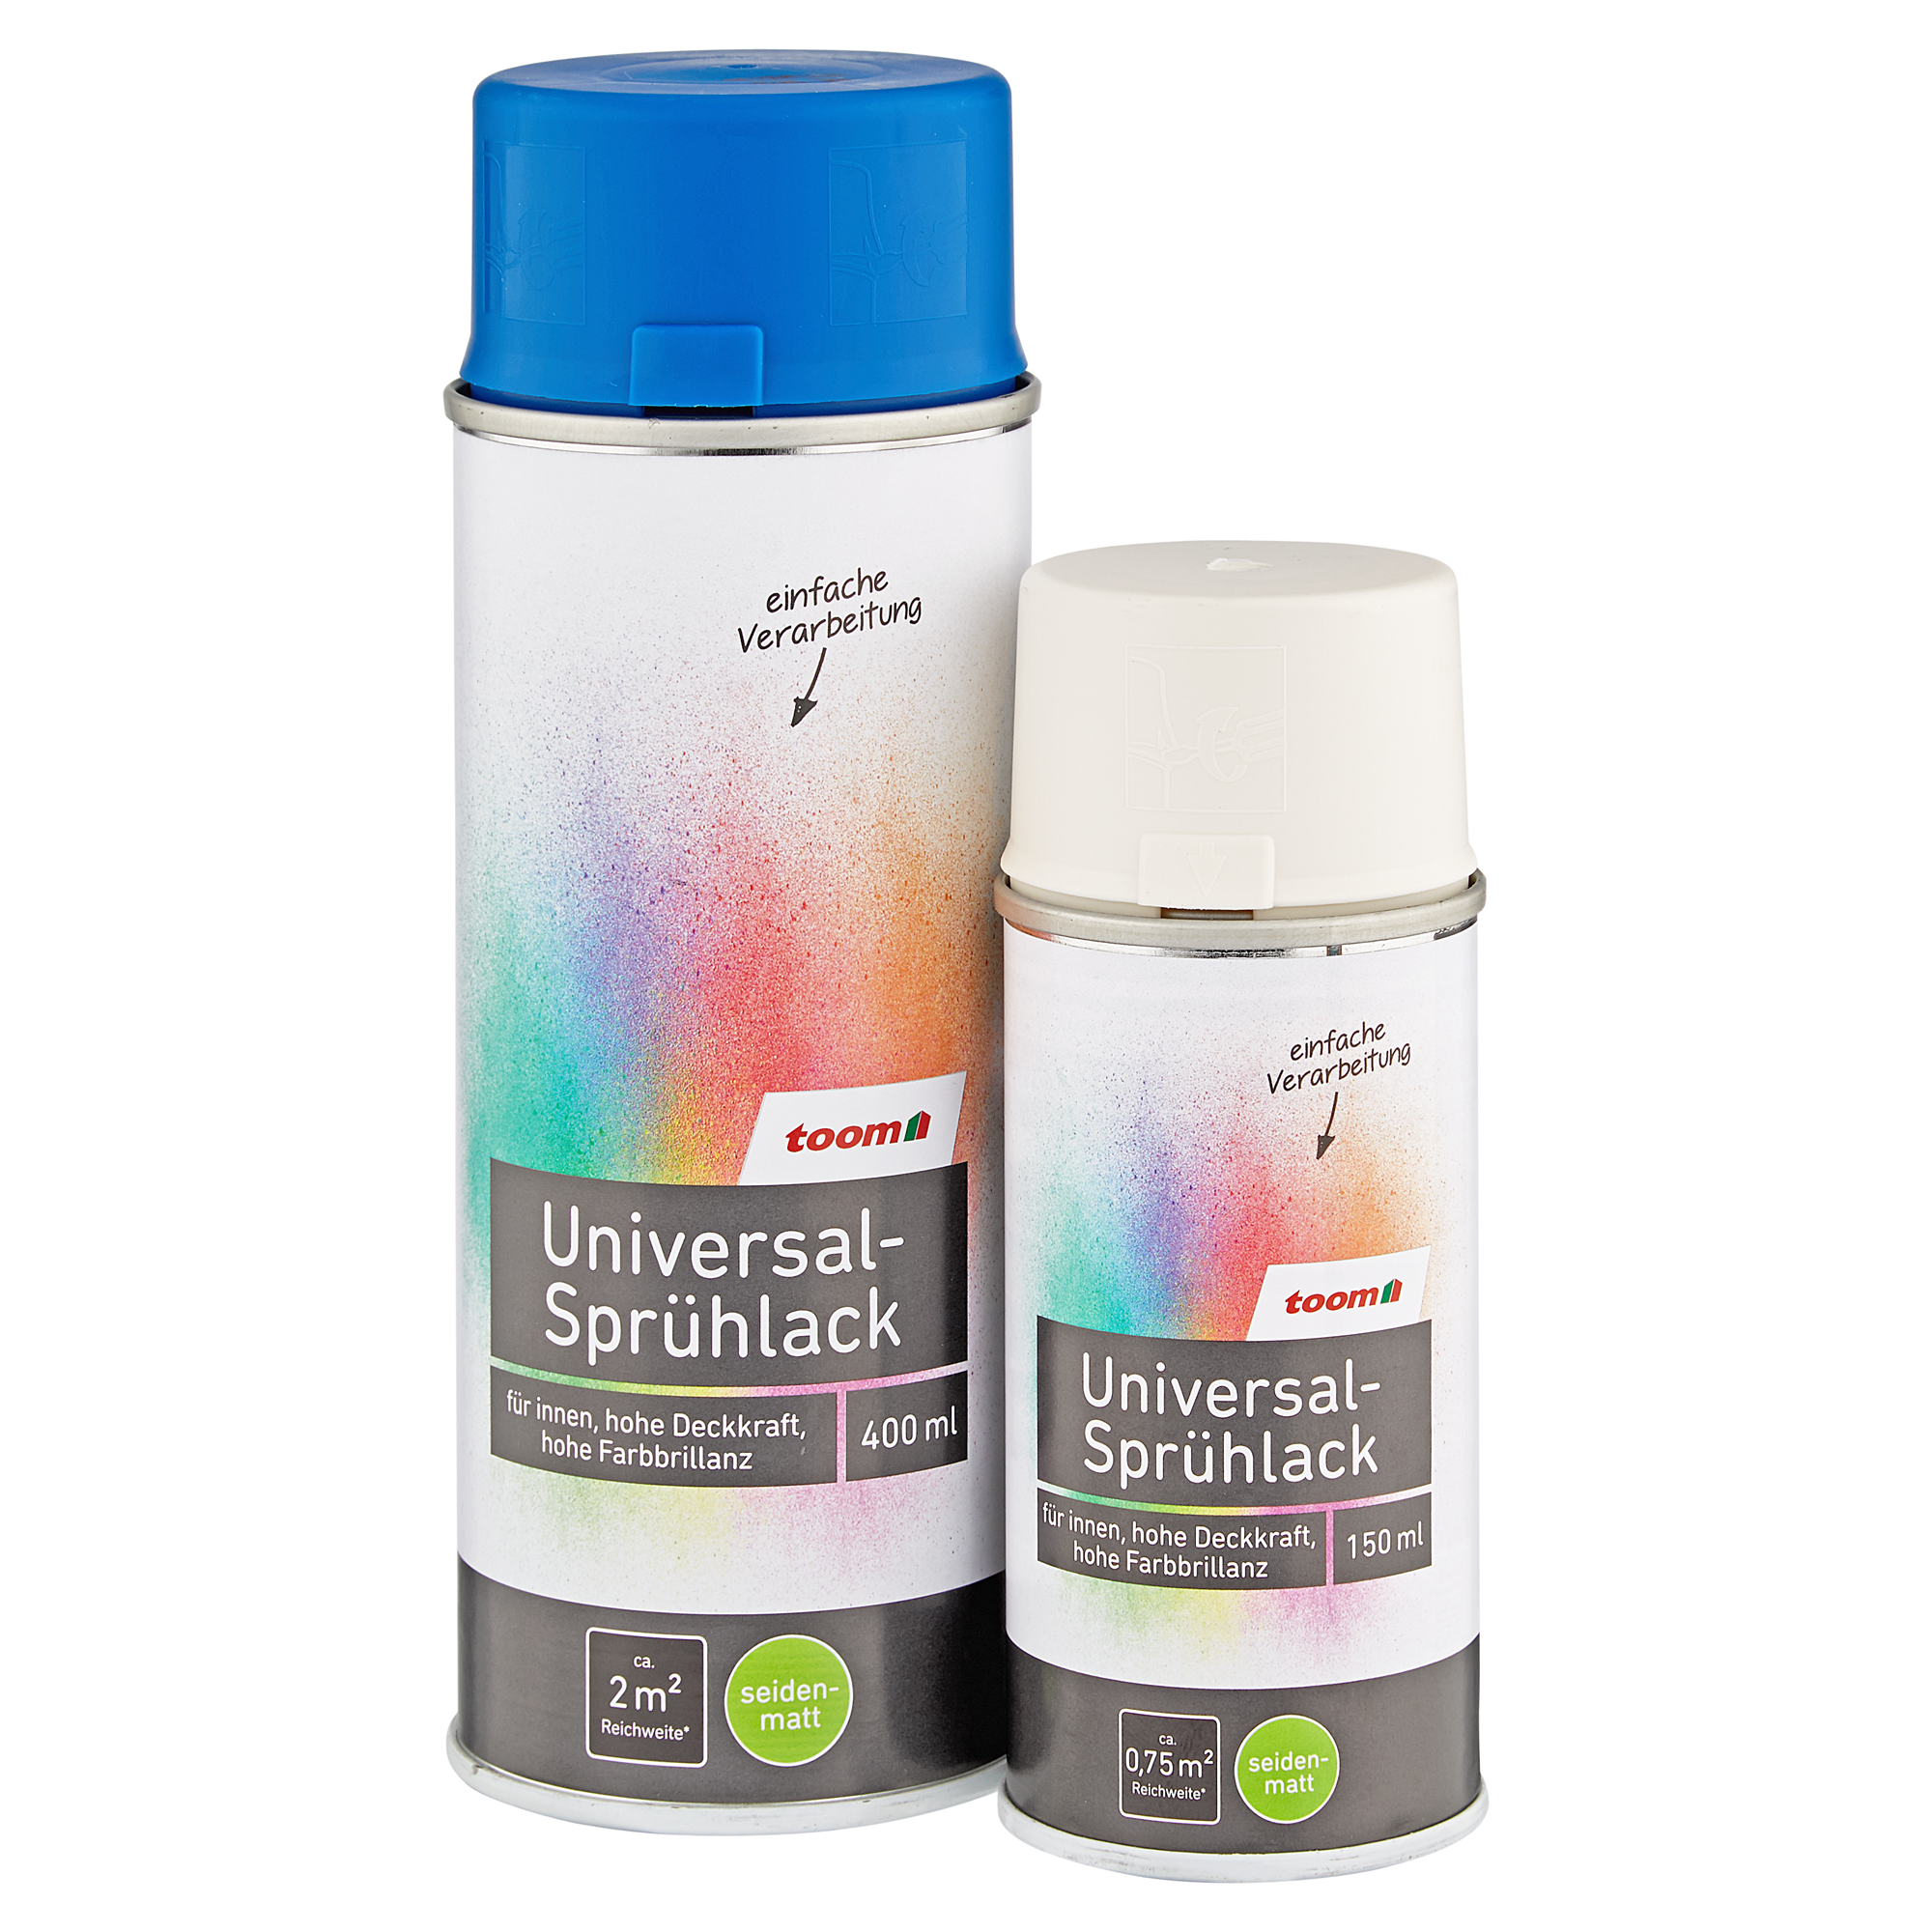 Universal-Sprühlack 'Bergkristall' cremeweiß seidenmatt 400 ml + product picture